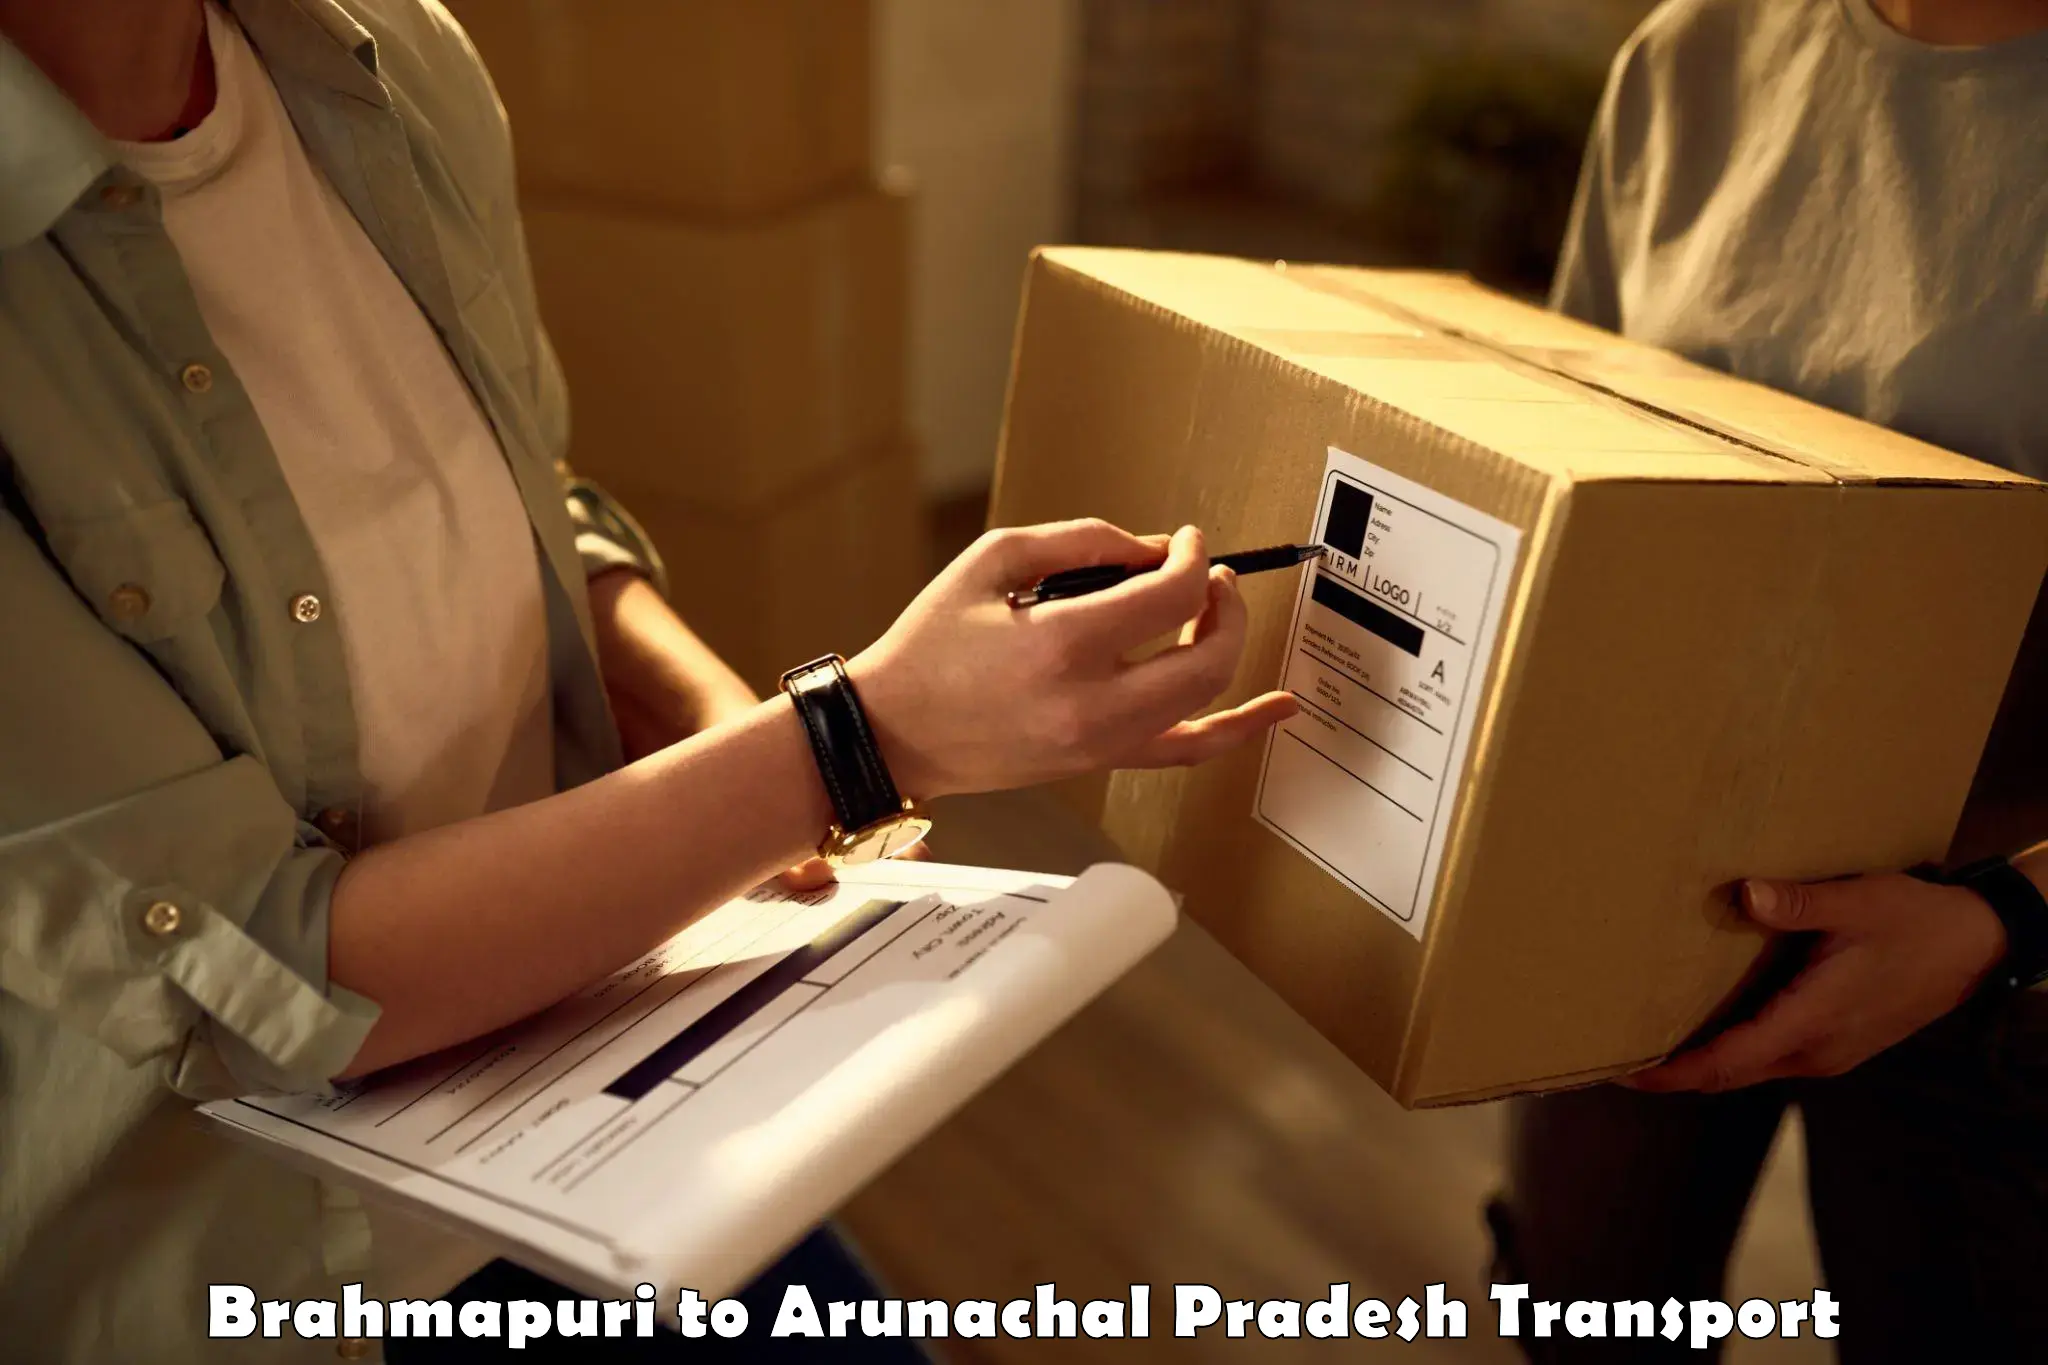 Goods delivery service Brahmapuri to Nirjuli